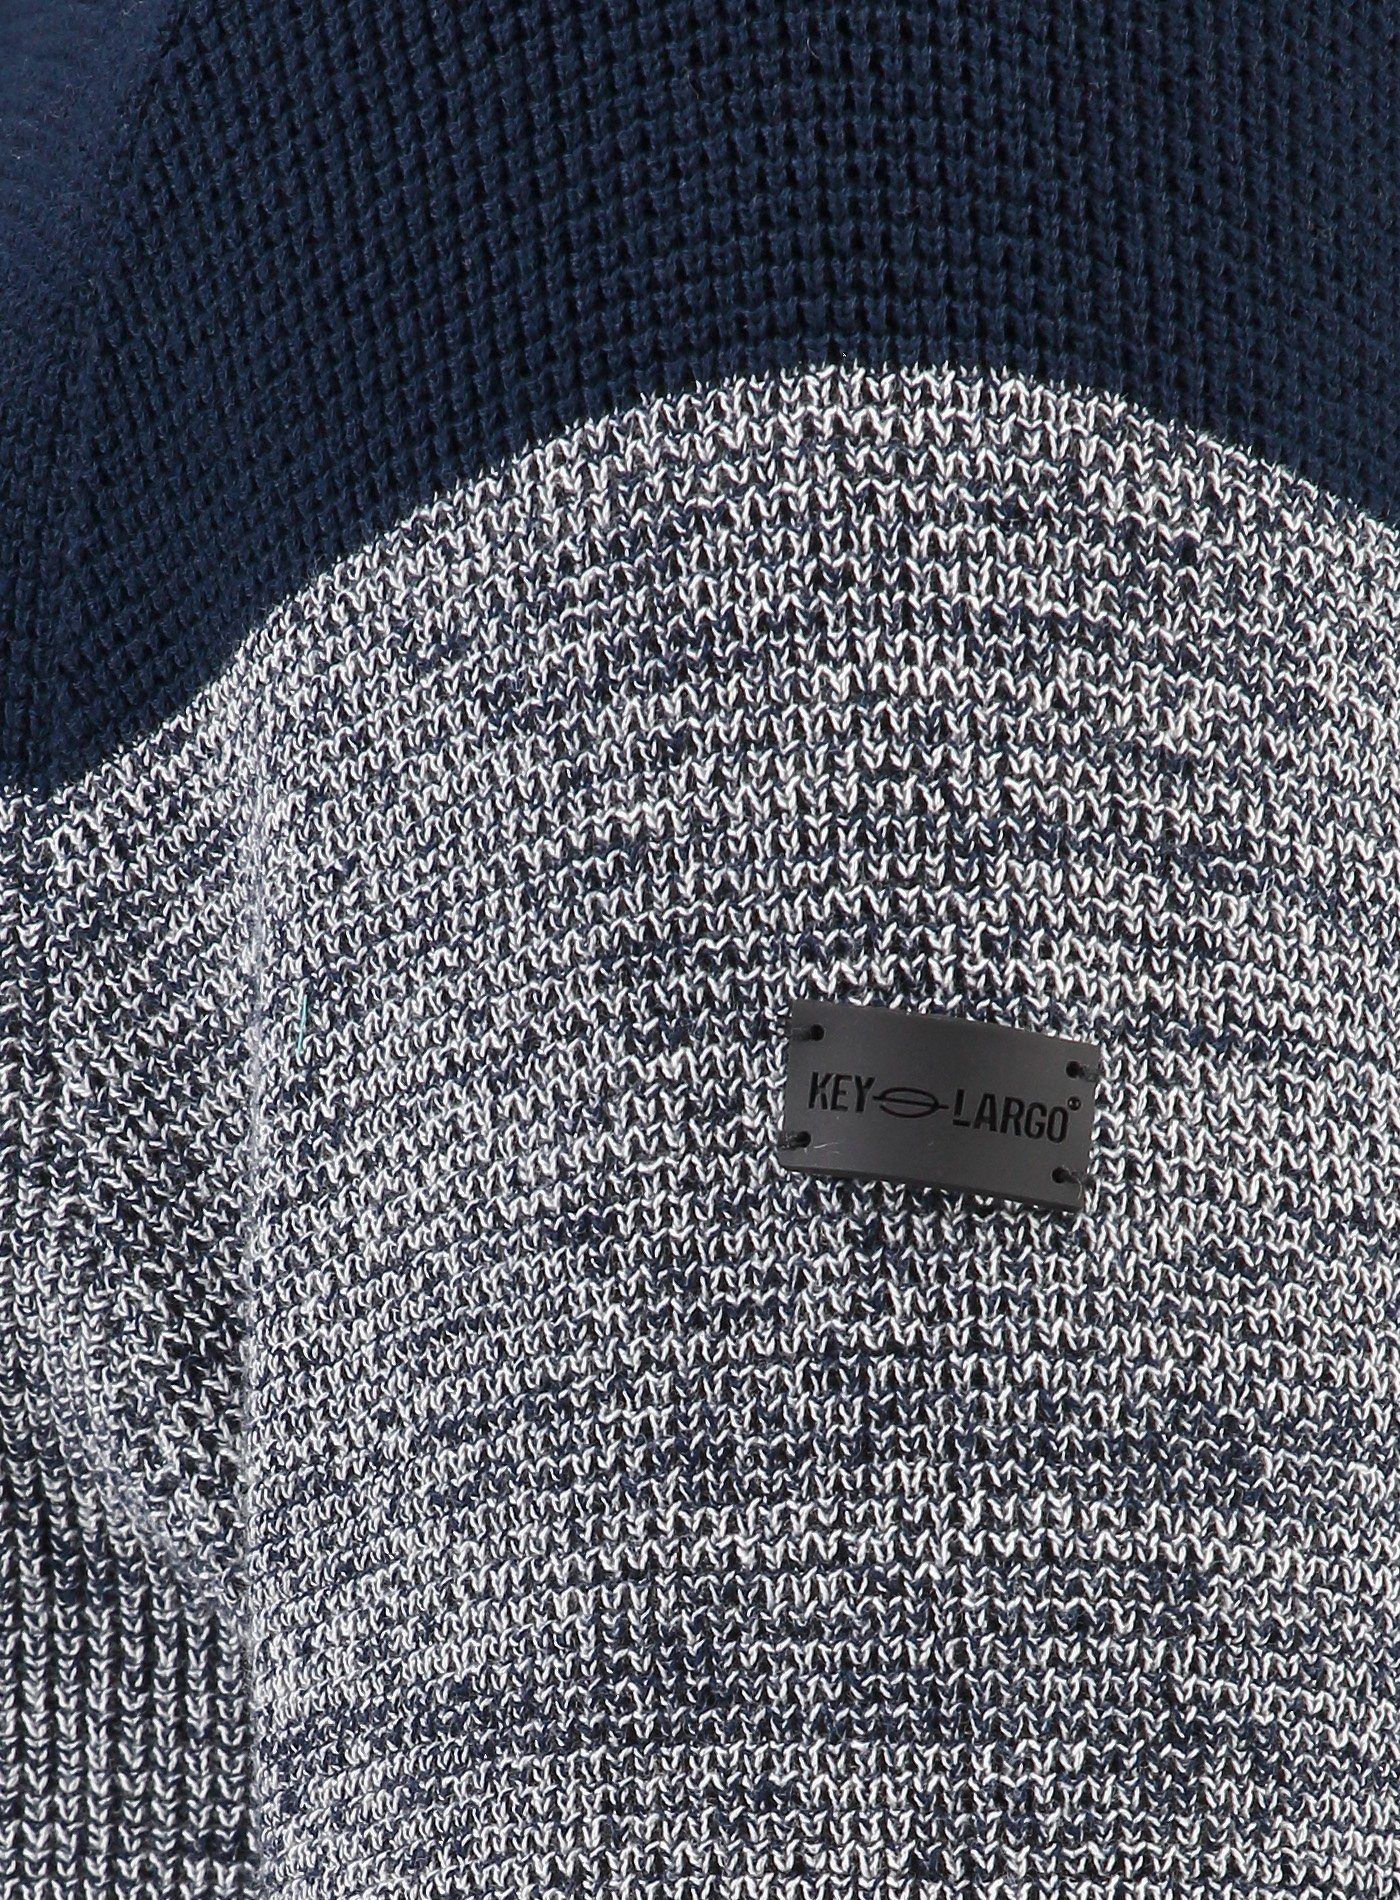 Key Largo Kapuzensweatshirt Streifen mit breiten schwarz-weiß